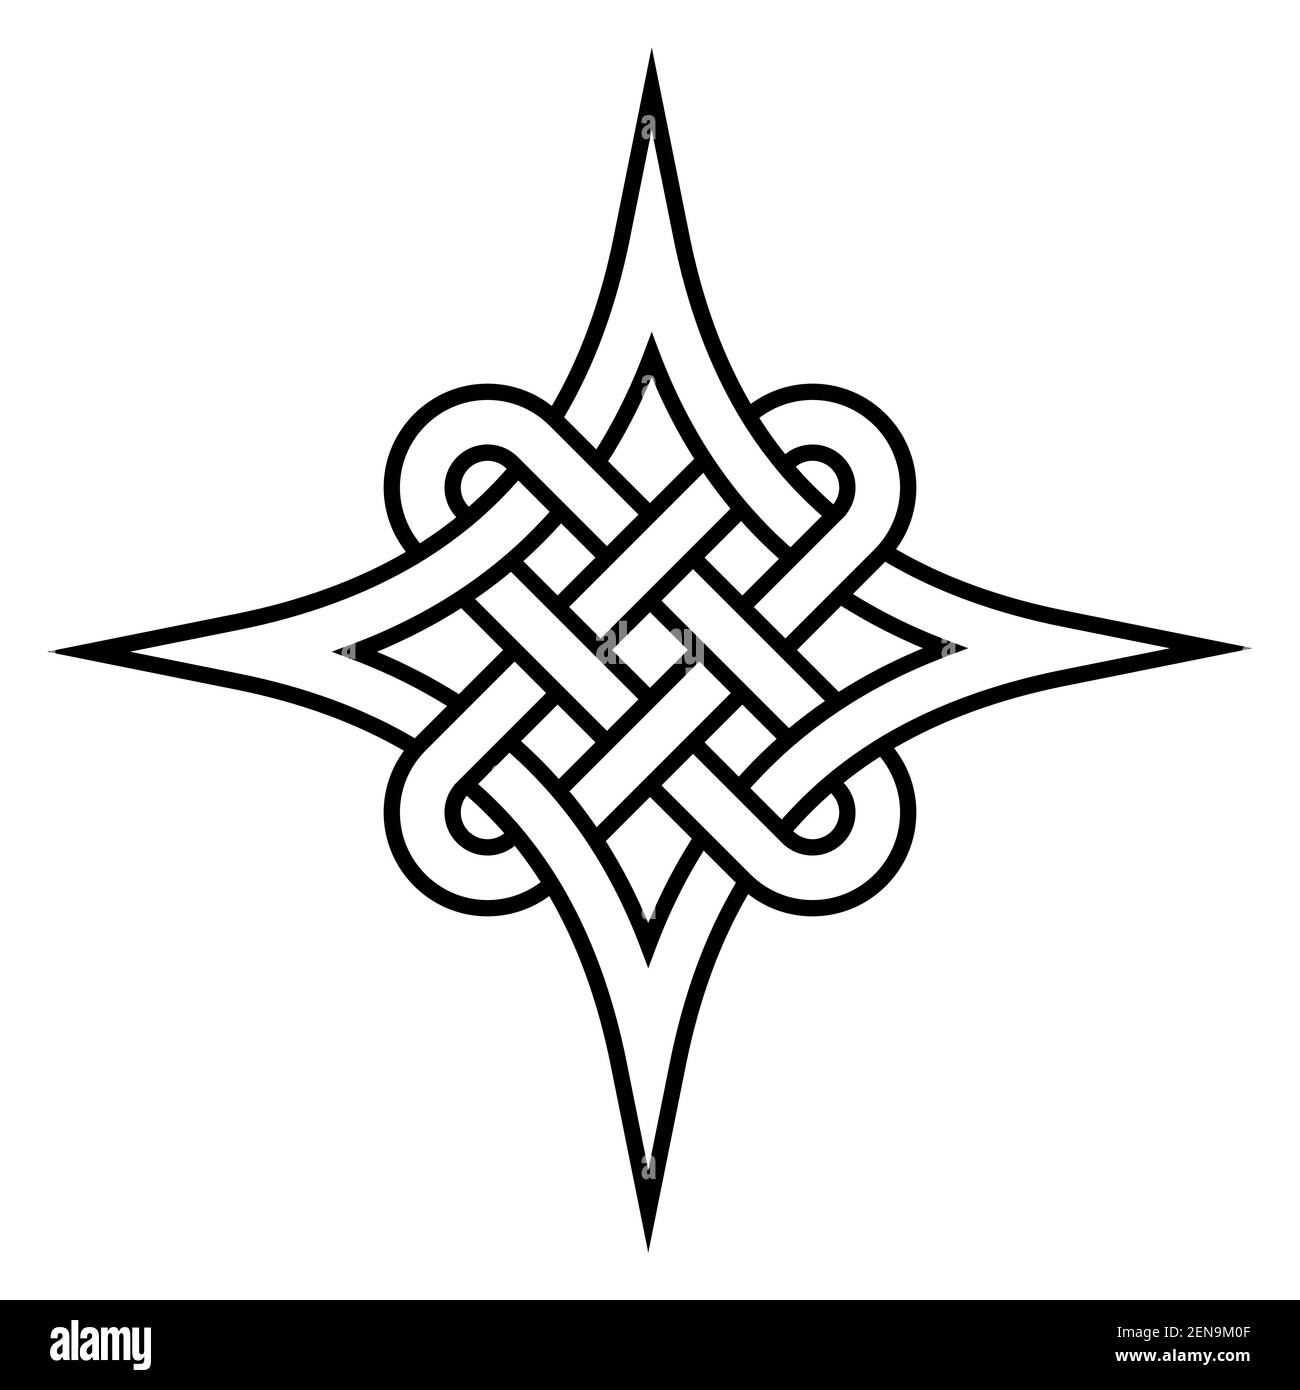 Nodo quaternario celtico dell'eternità, simbolo di modello celtico vettoriale stretta connessione e amore eterno Illustrazione Vettoriale